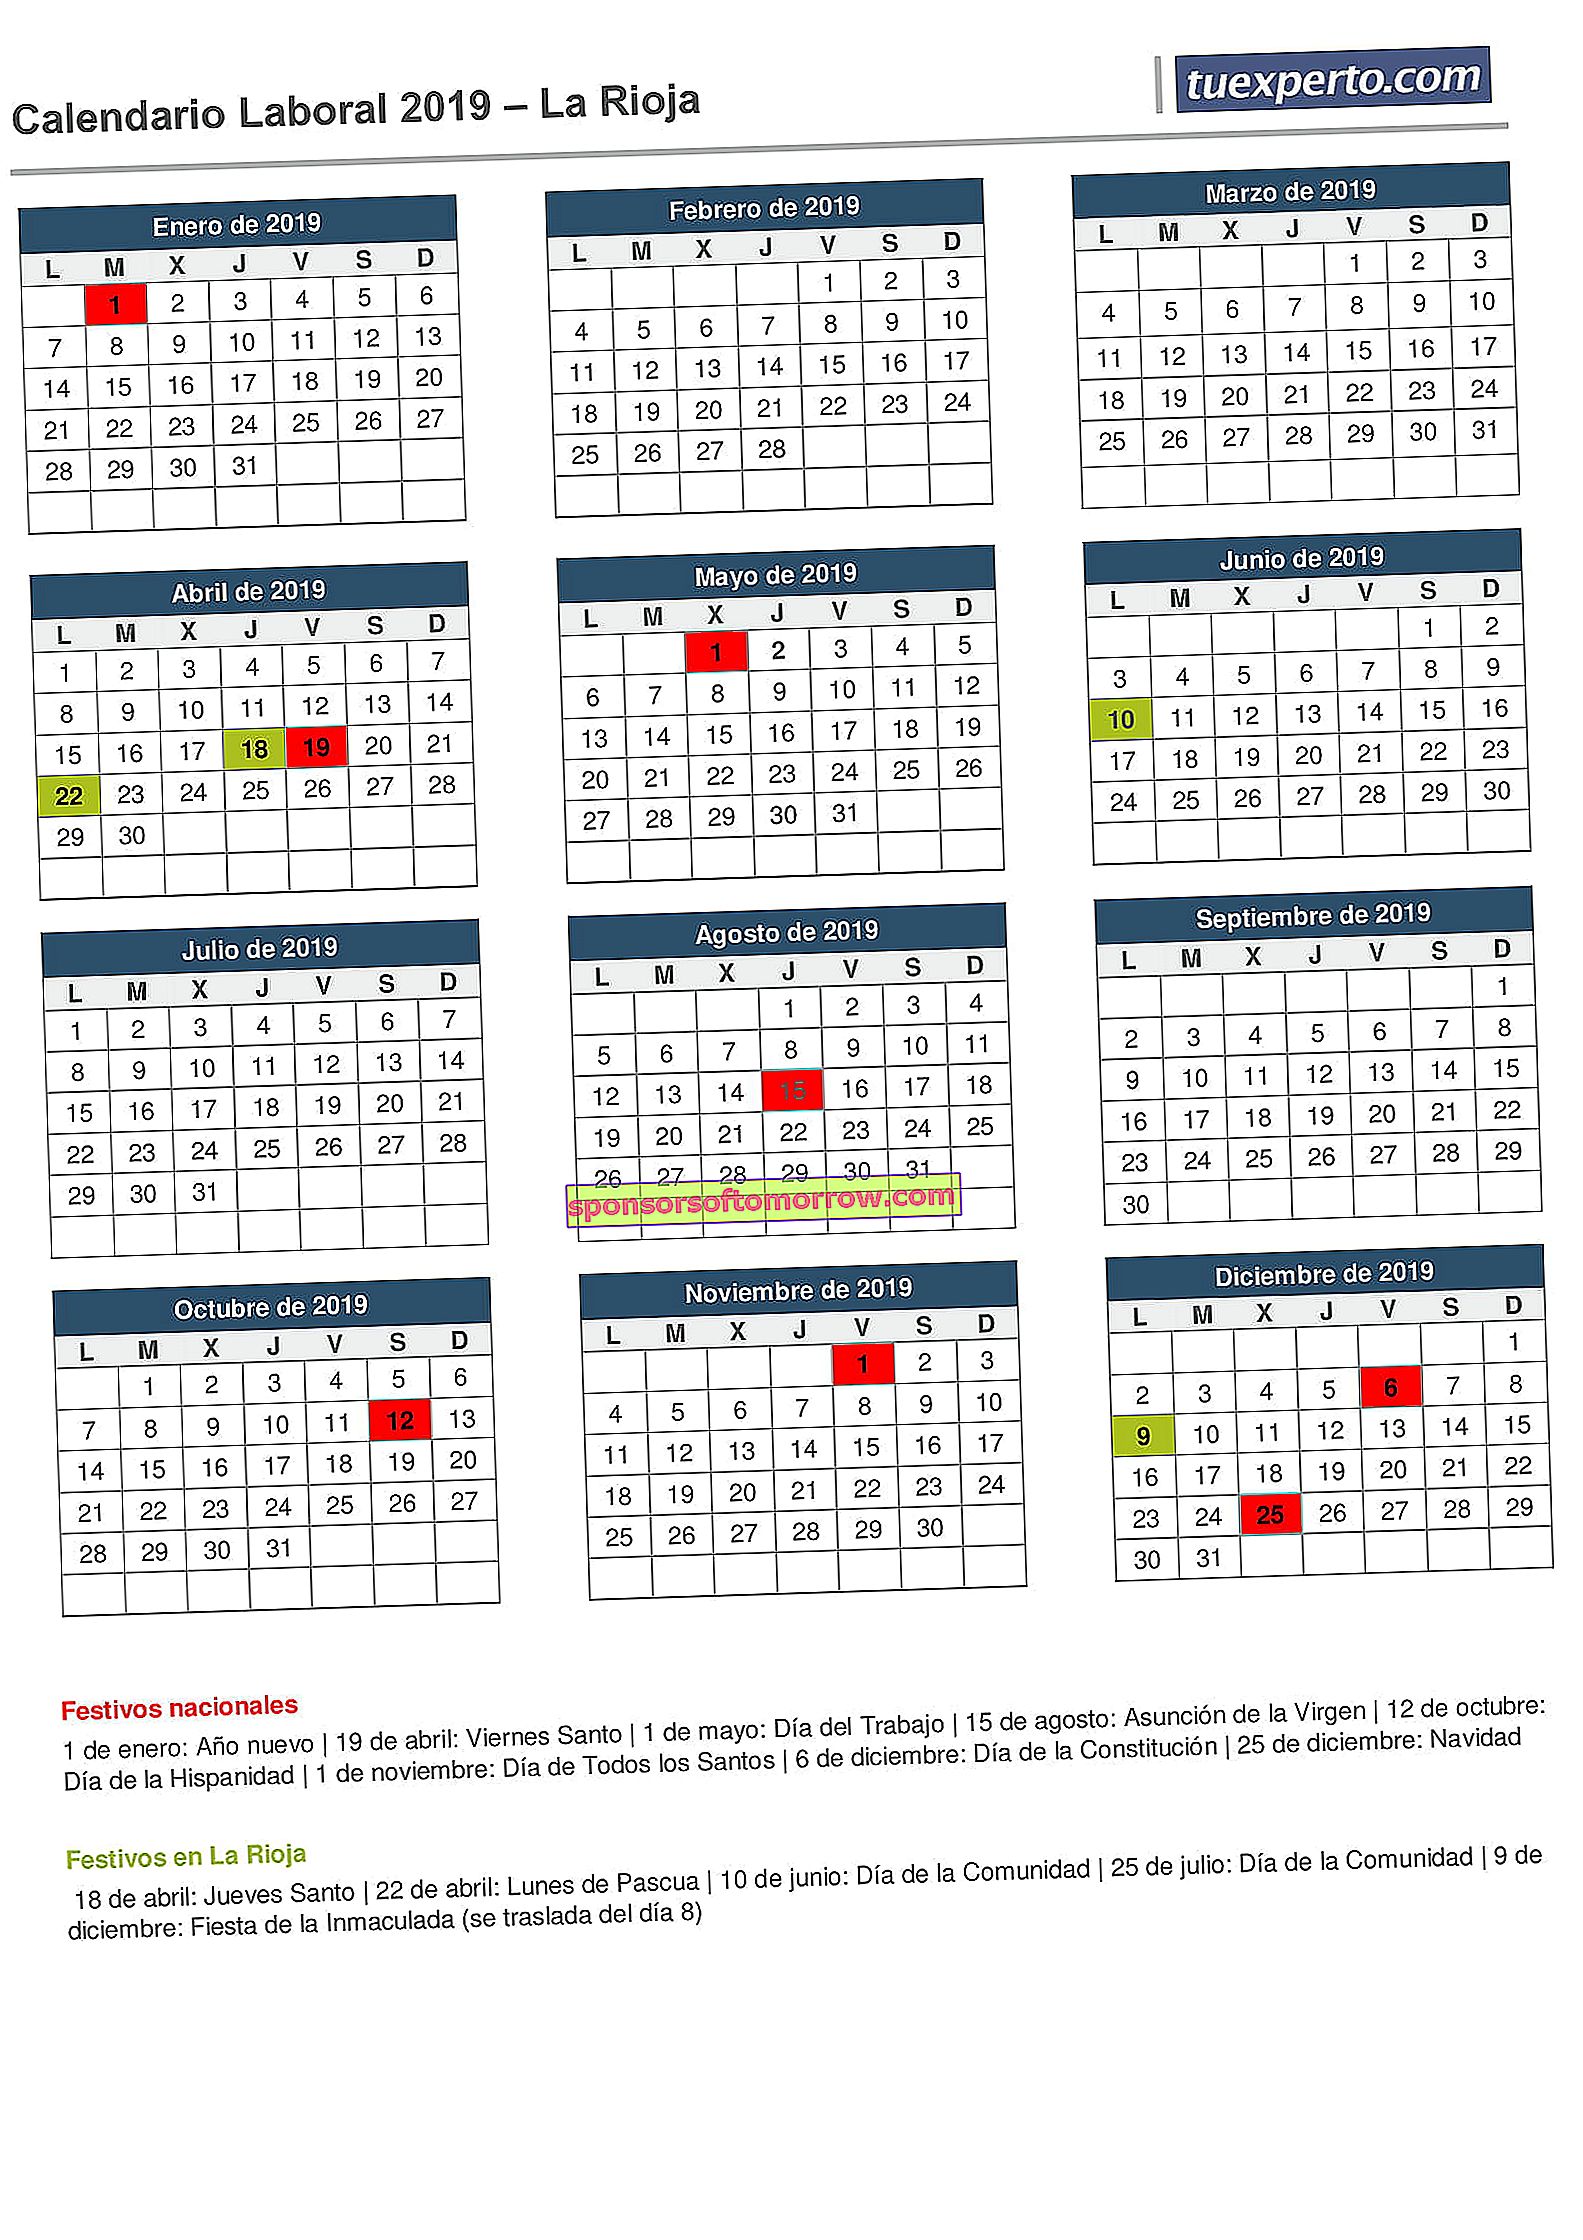 calendario laboral la rioja 2019